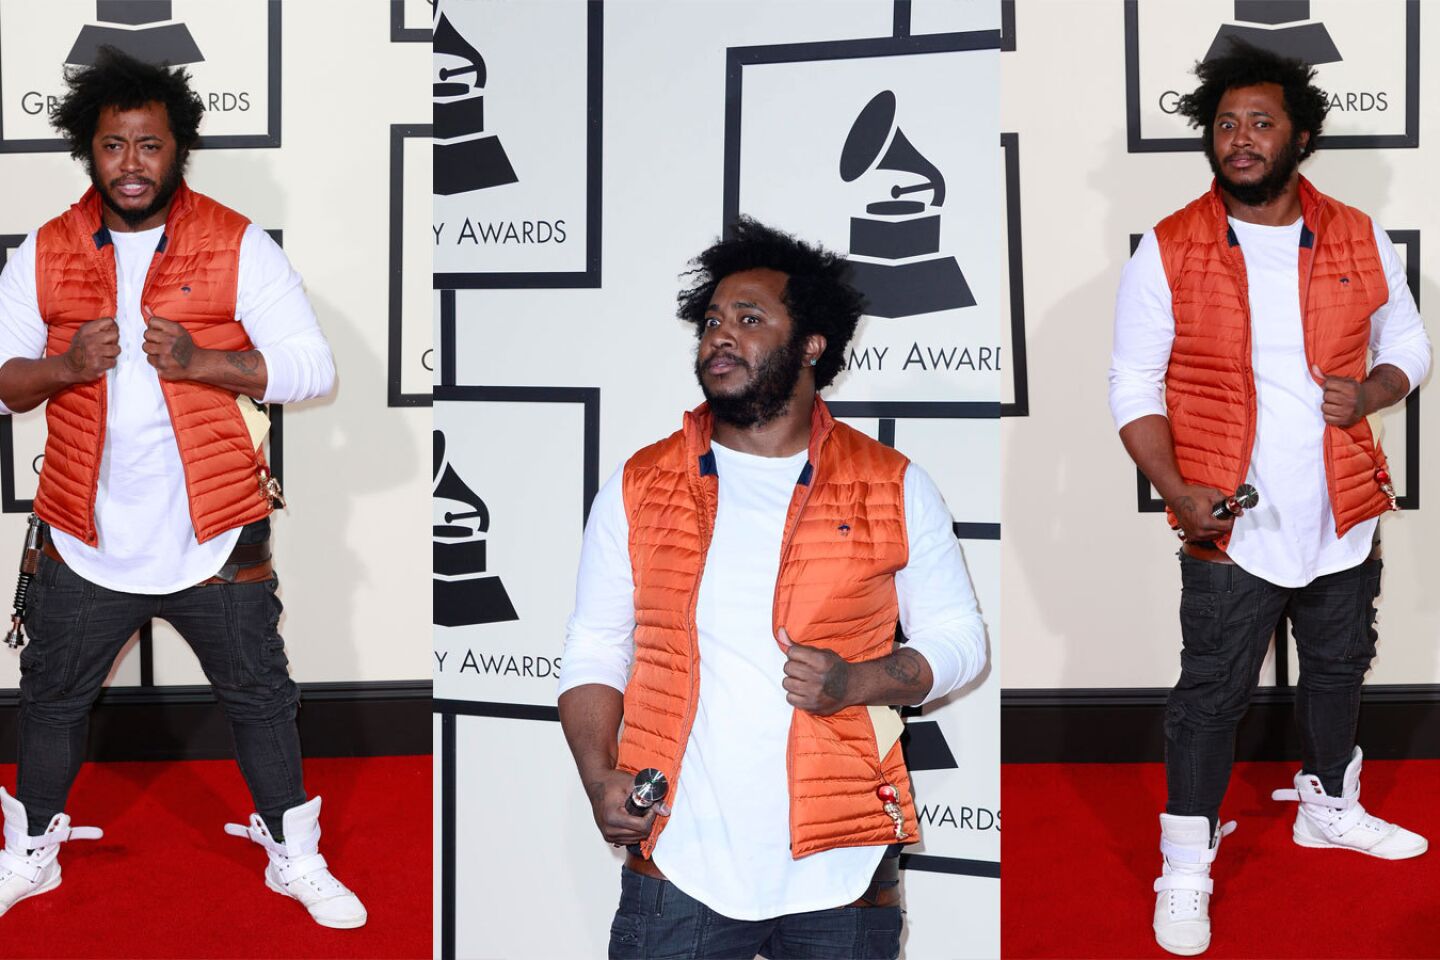 Grammys 2016: Worst dressed